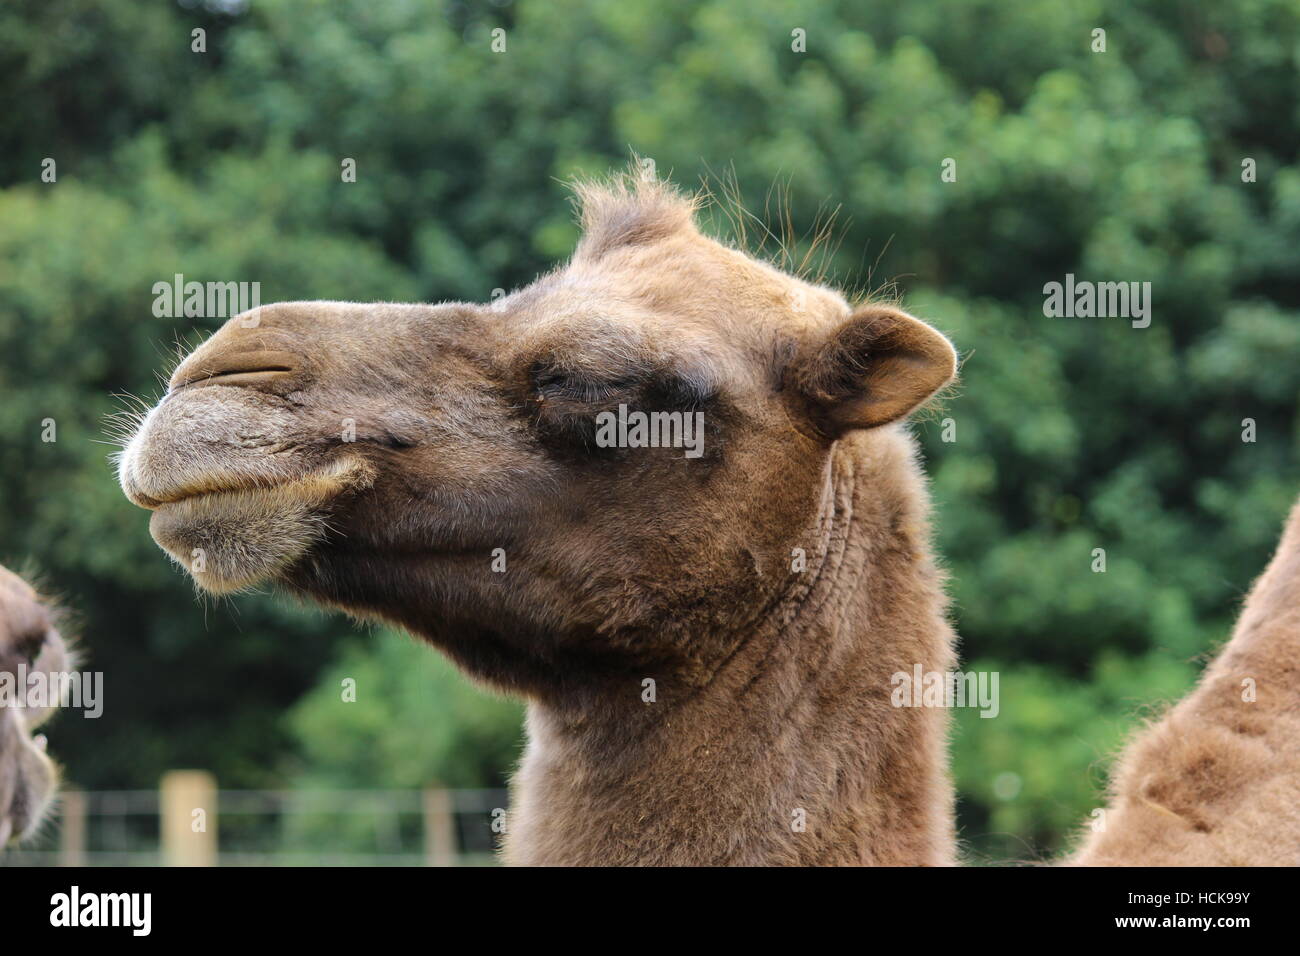 Portrait de profil de chameau Cotswold Wildlife Park smiling portrait Banque D'Images